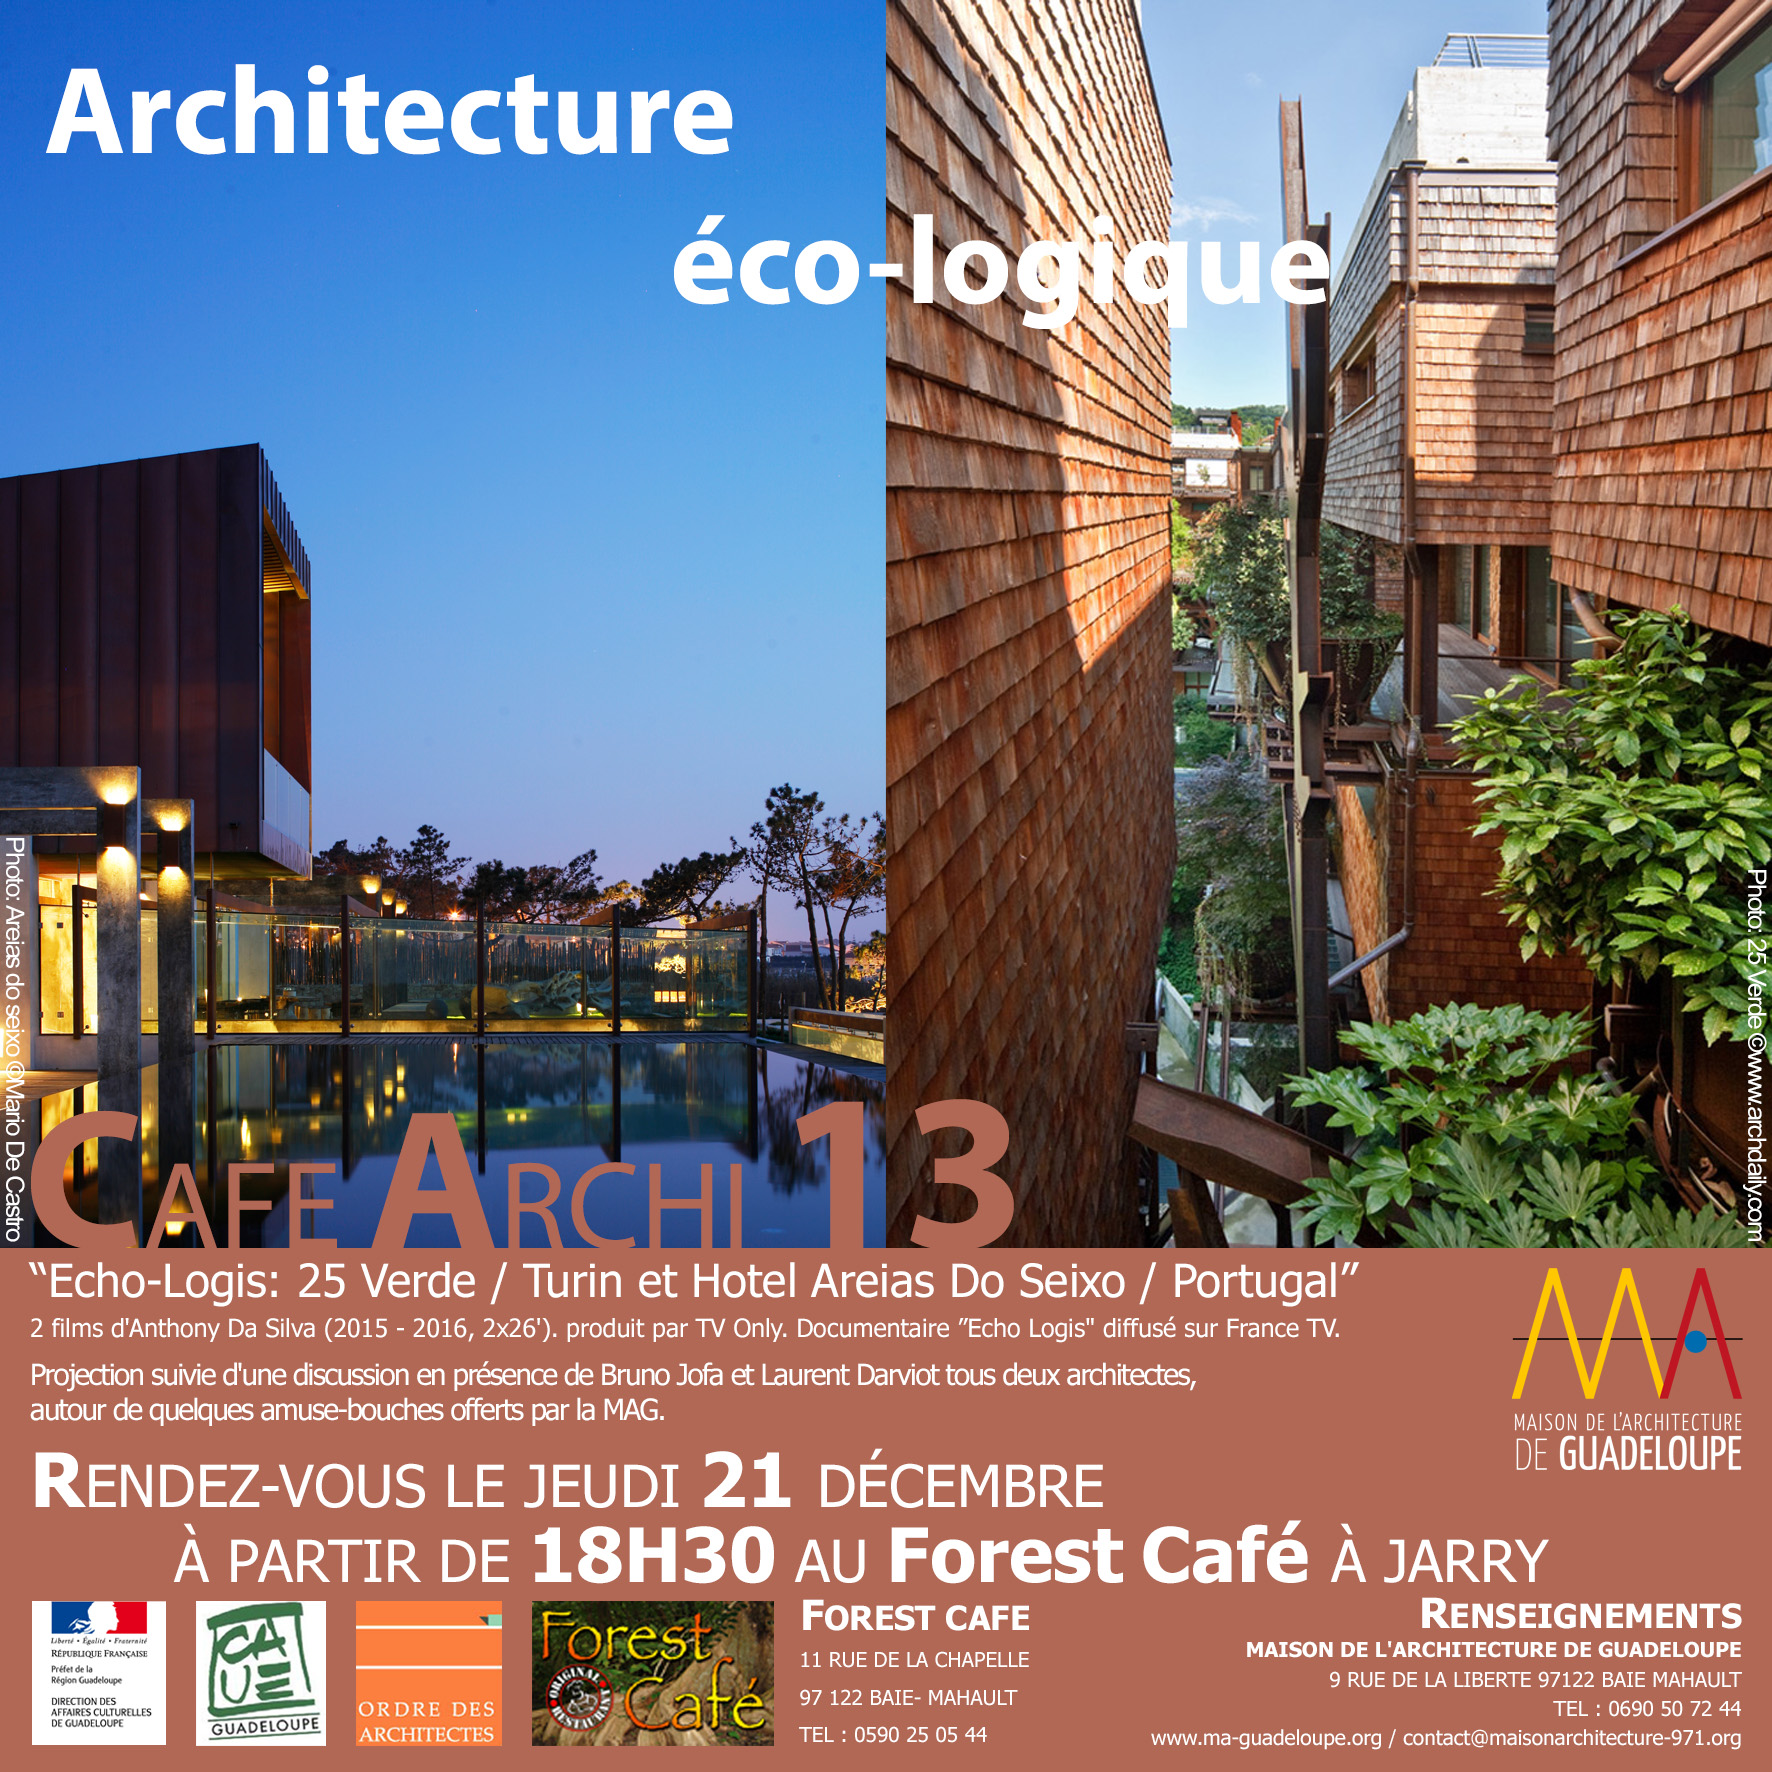 You are currently viewing Café archi #13 : architecture éco-logique